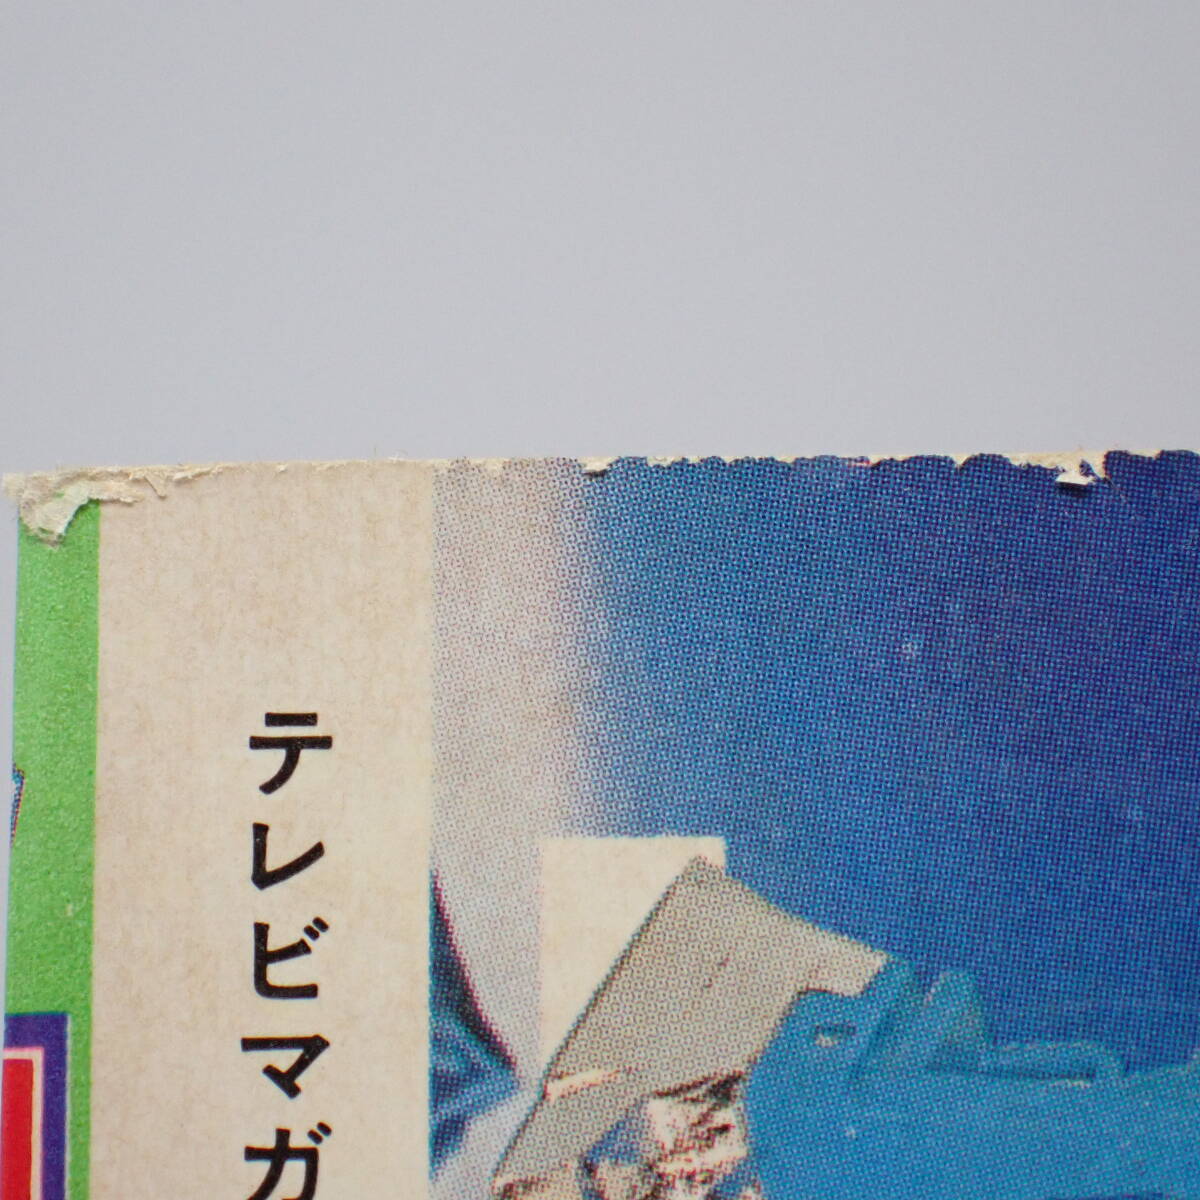 講談社 テレビマガジン 1980年 4月号 ウルトラマン80大特集 ウルトラマン80 仮面ライダー ダイアクロン 電子戦隊デンジマン 他の画像7